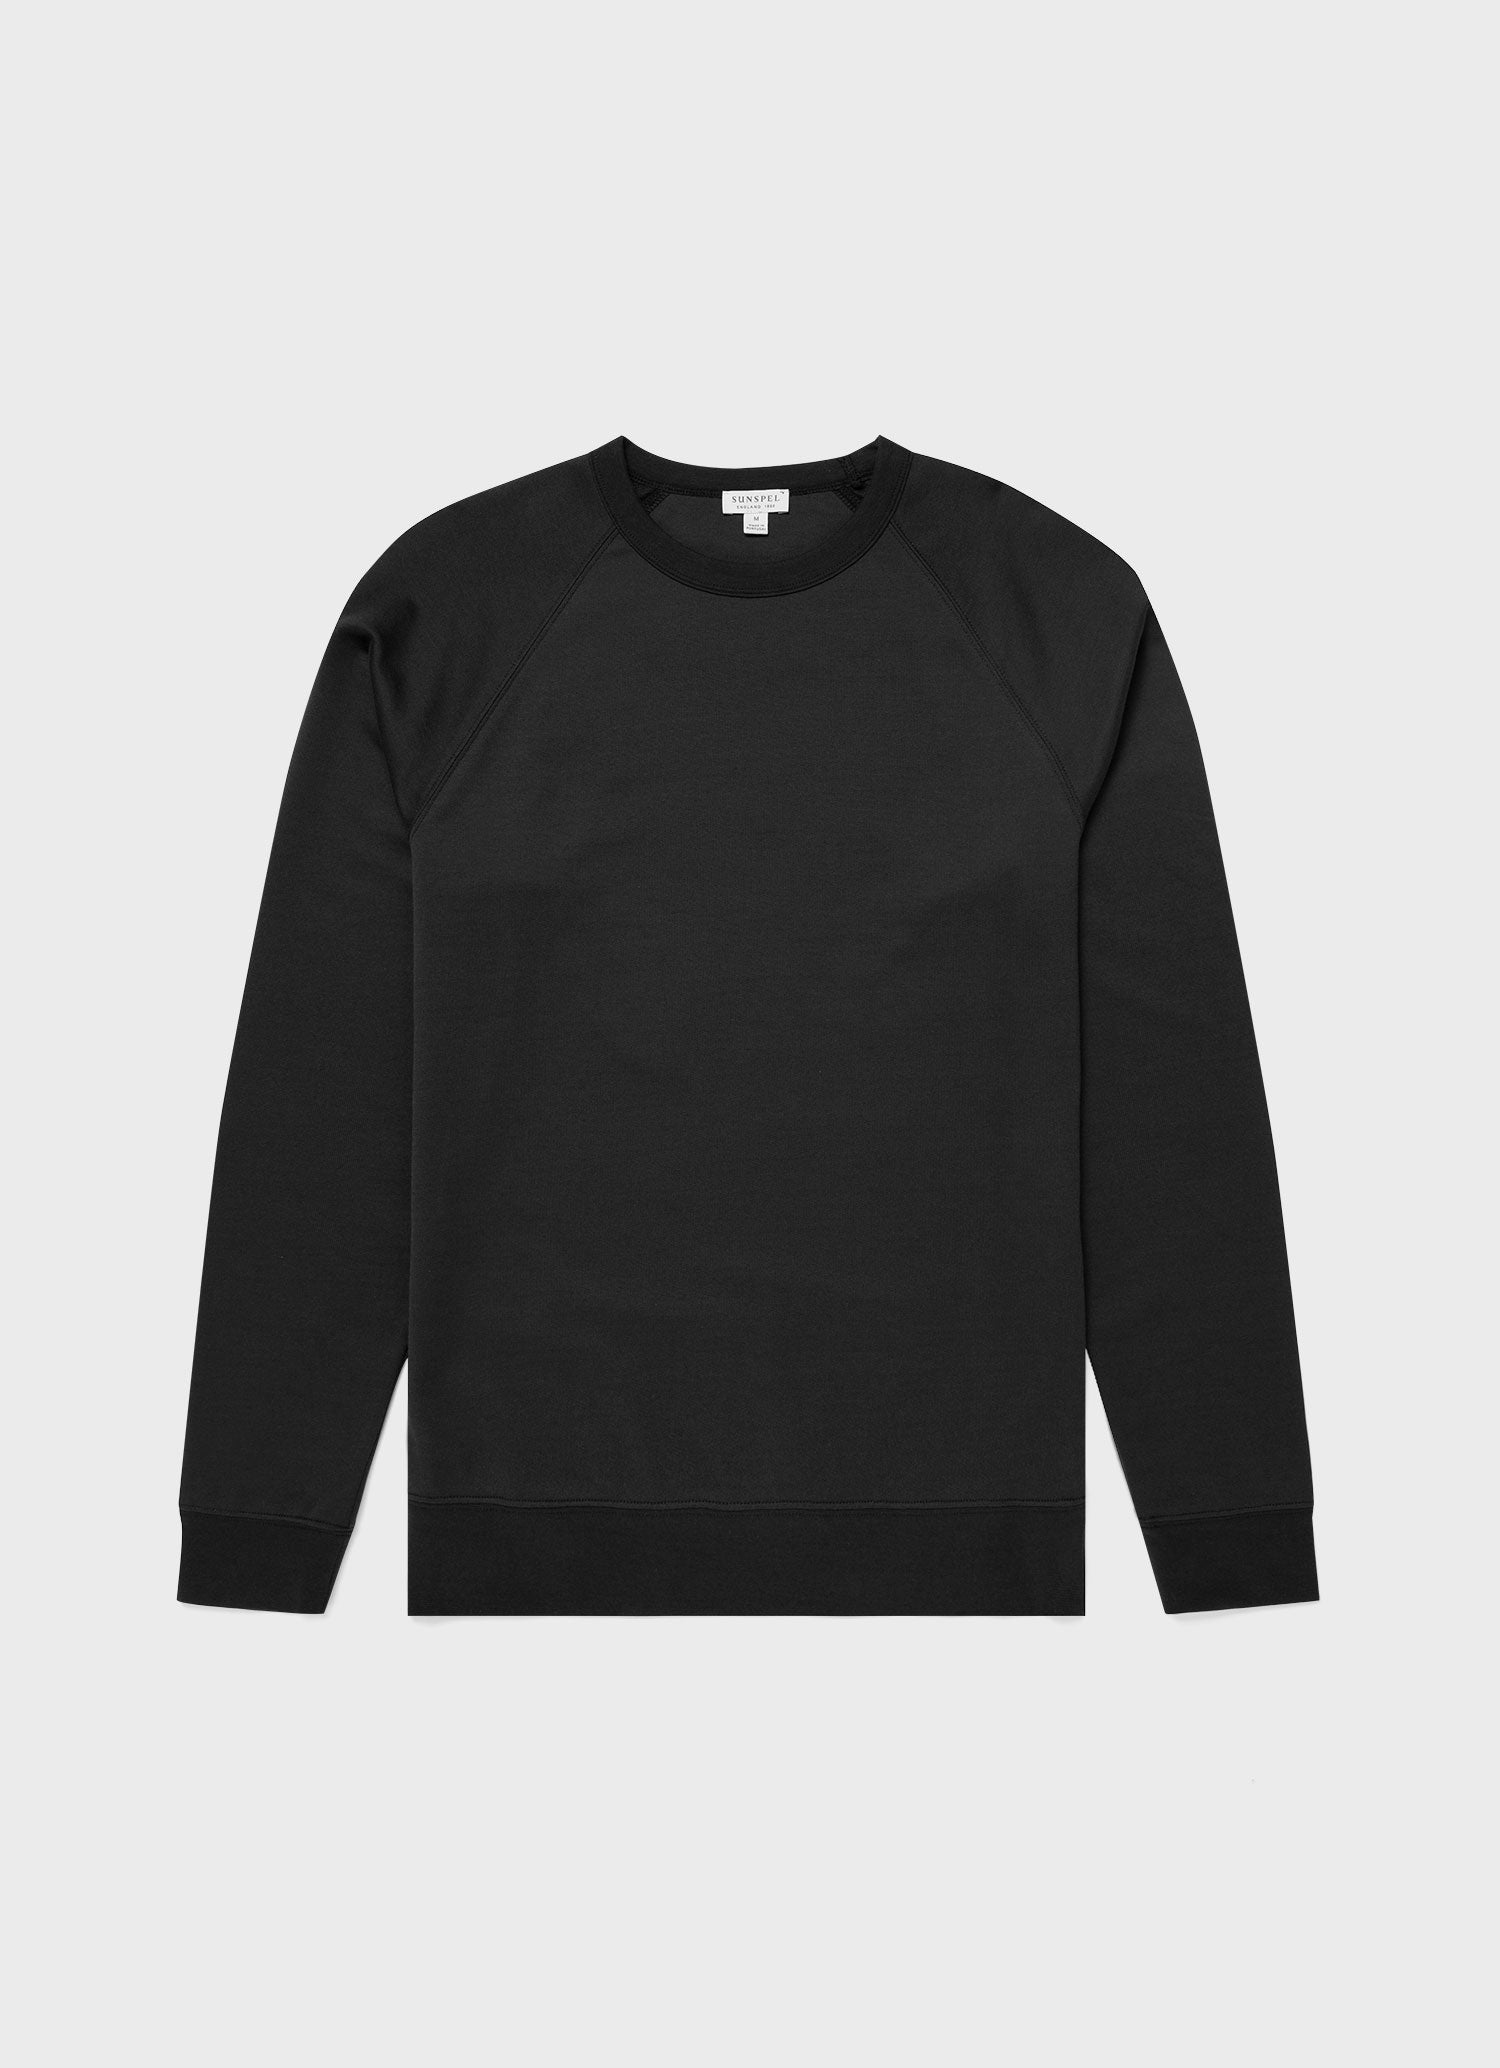 Men's Sea Island Cotton Sweatshirt in Black | Sunspel